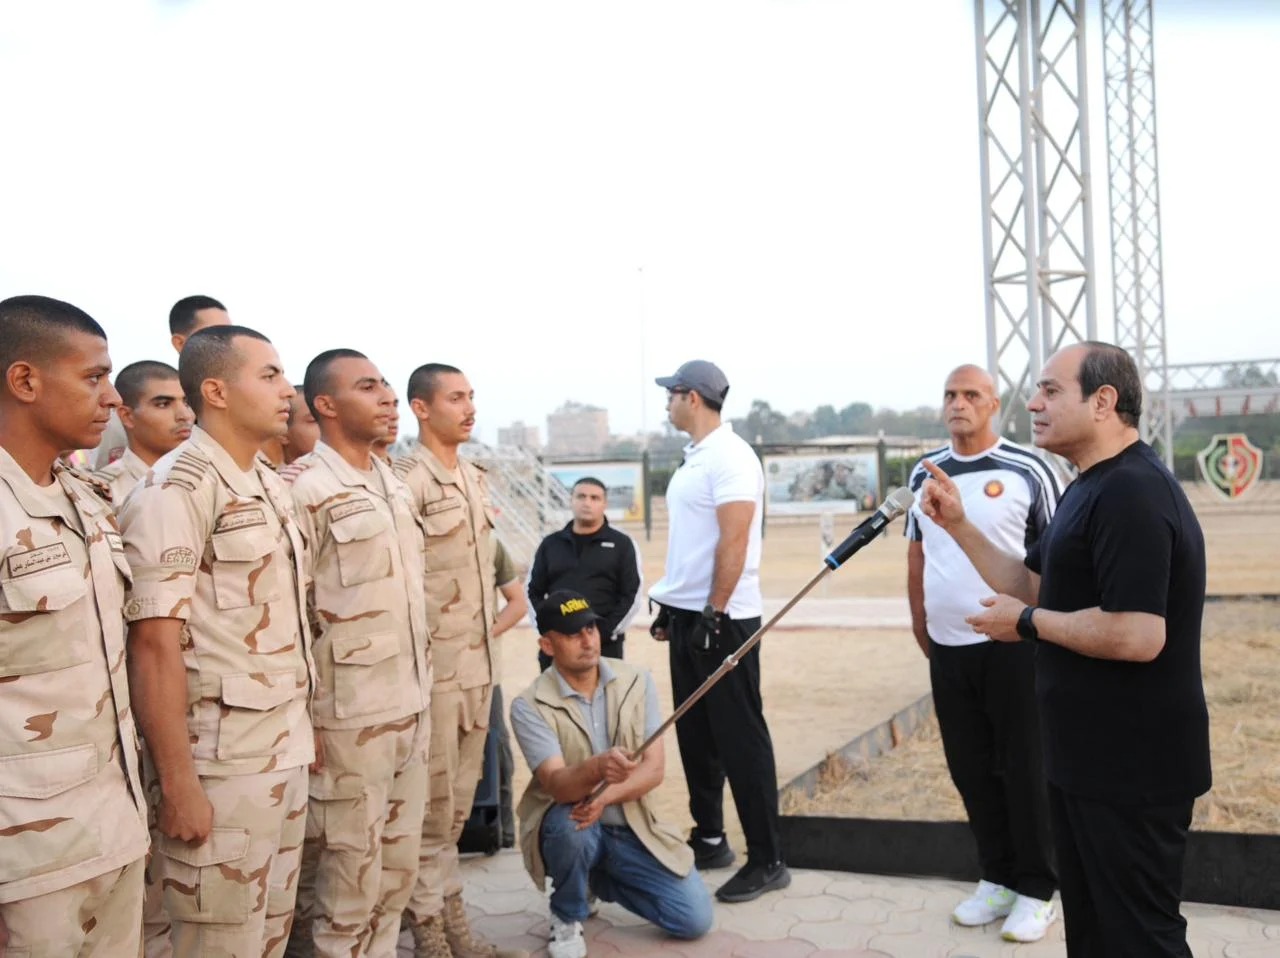  الأكاديمية العسكرية المصرية